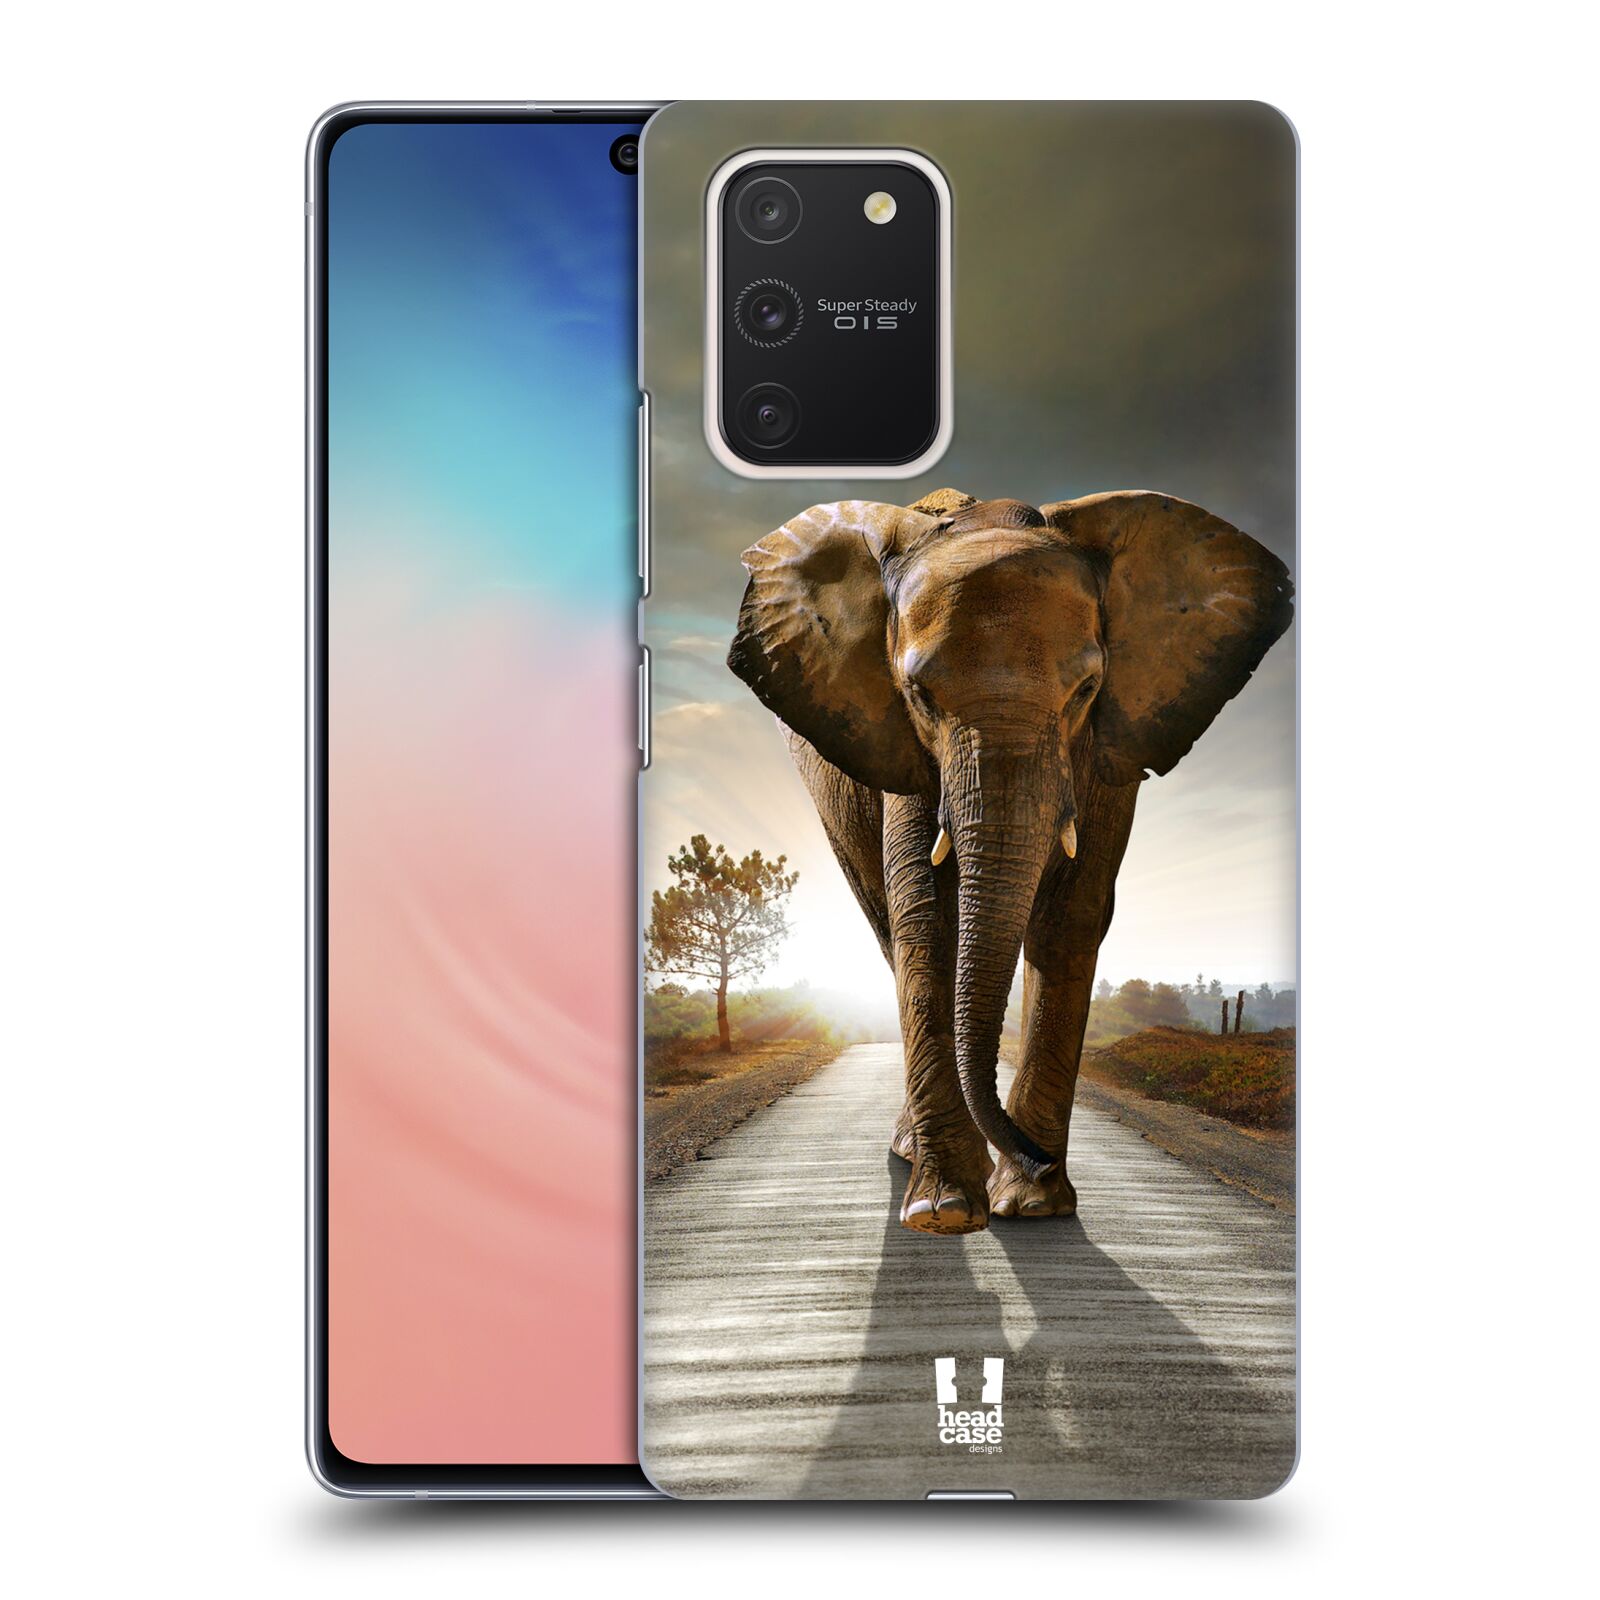 Zadní obal pro mobil Samsung Galaxy S10 LITE - HEAD CASE - Svět zvířat kráčející slon